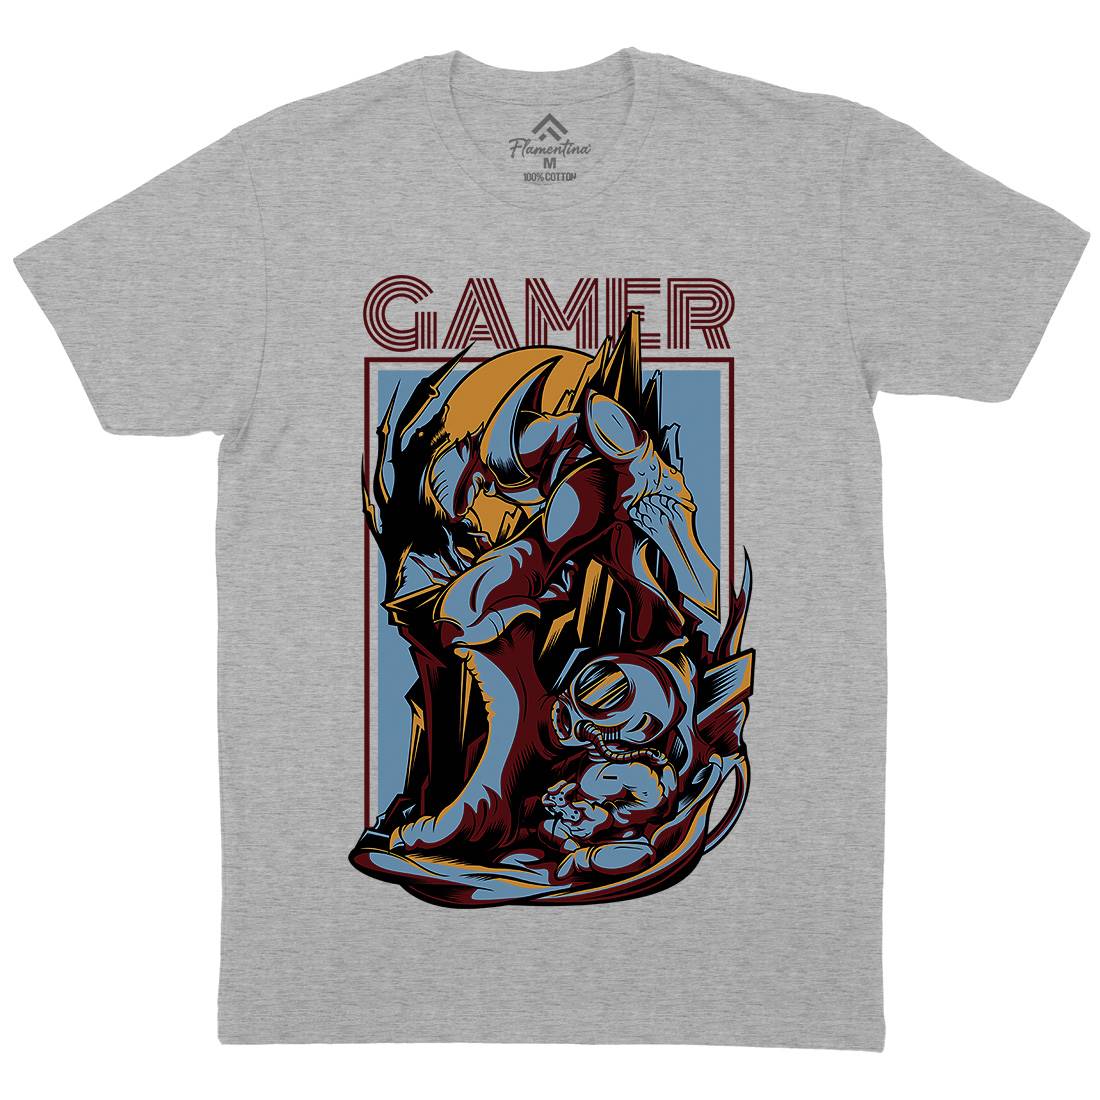 Gamer Mens Organic Crew Neck T-Shirt Geek D789